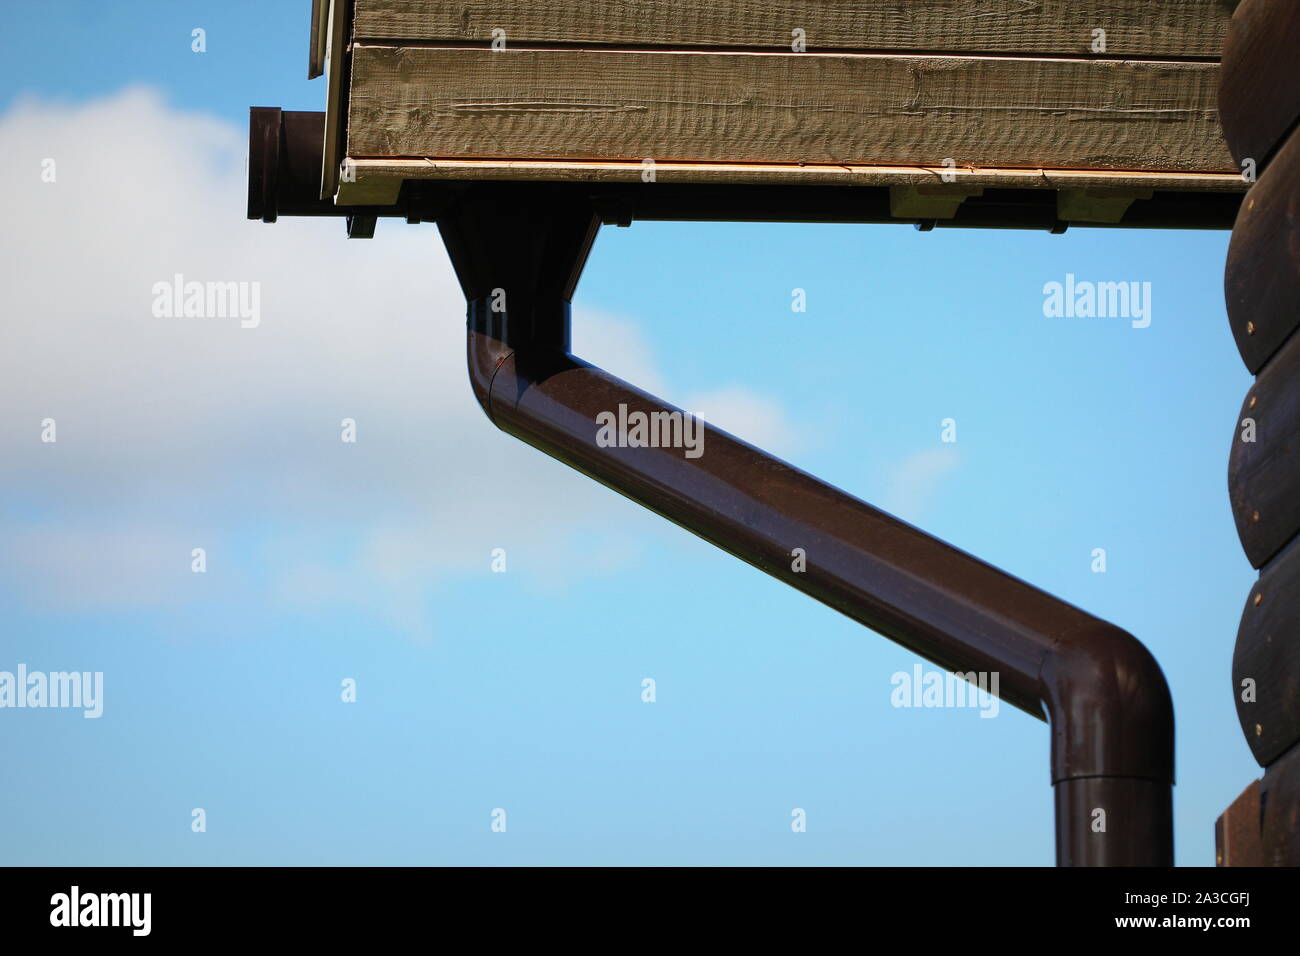 Regenrinne Pipeline System Installation. Dach- Konstruktion. Regenrinne System und Dach Schutz vor Schnee Stockfoto